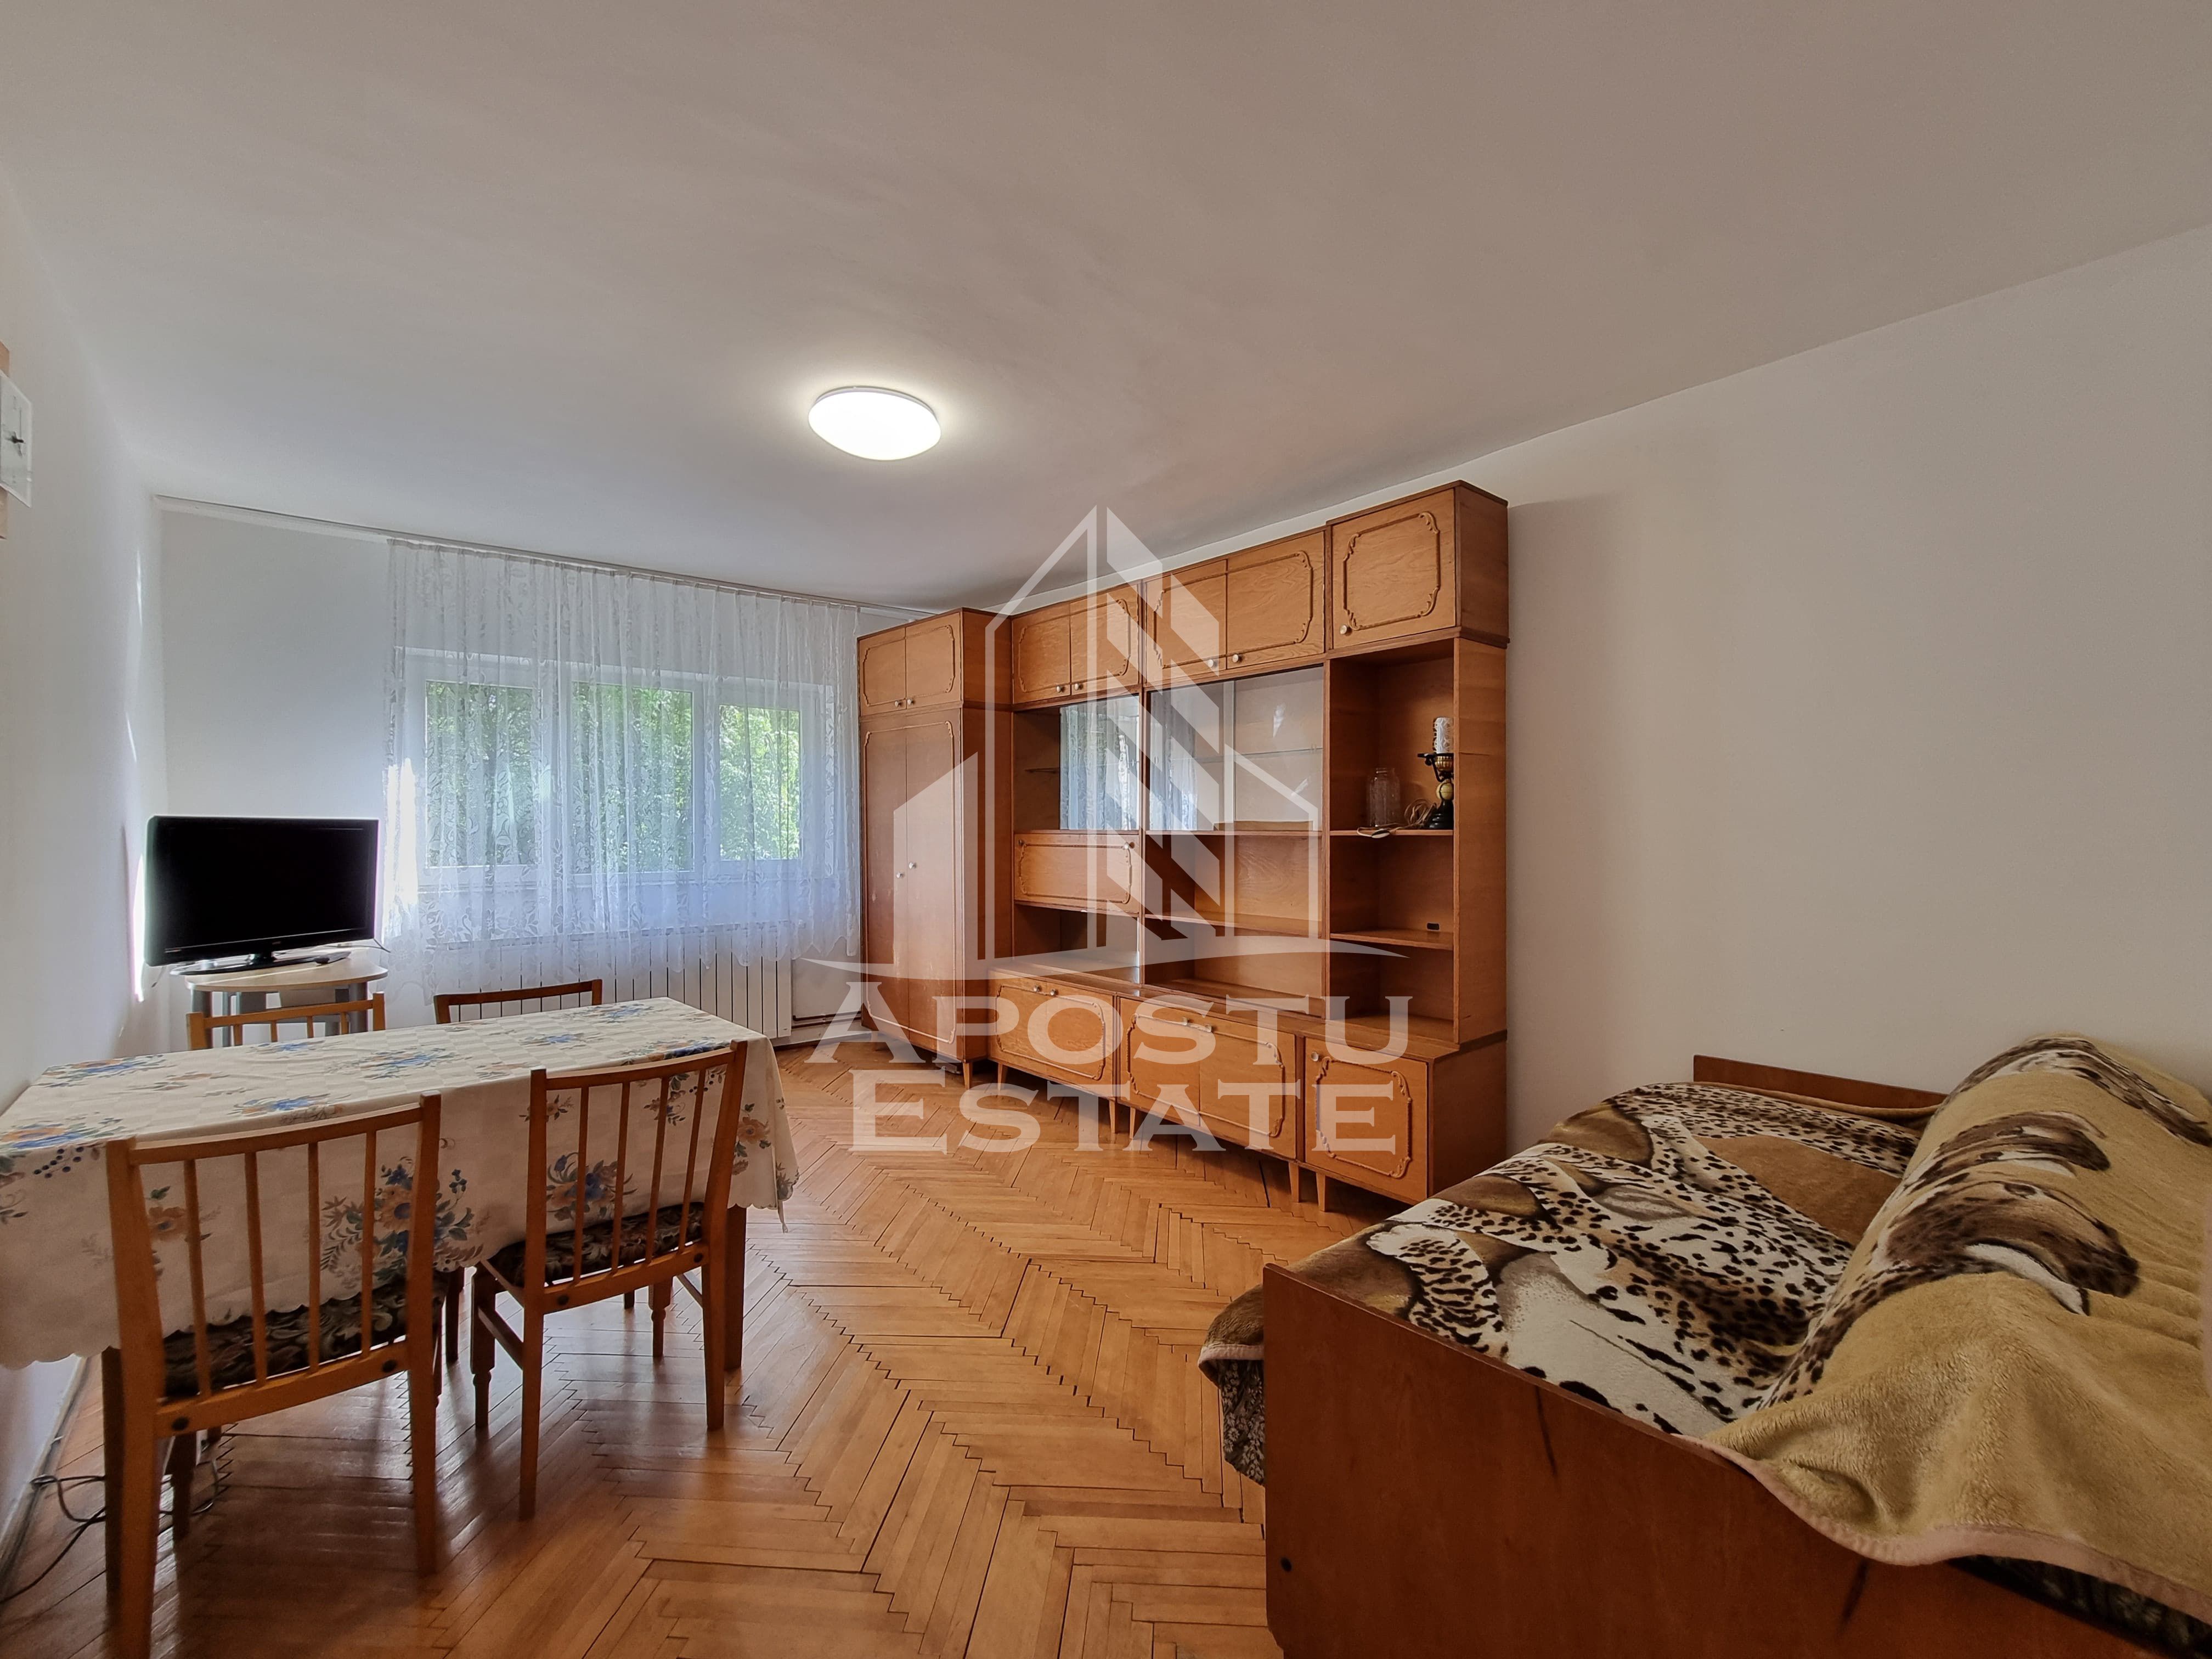 Apartament 2 camere, decomandat, etaj intermediar, Mircea cel  Batran